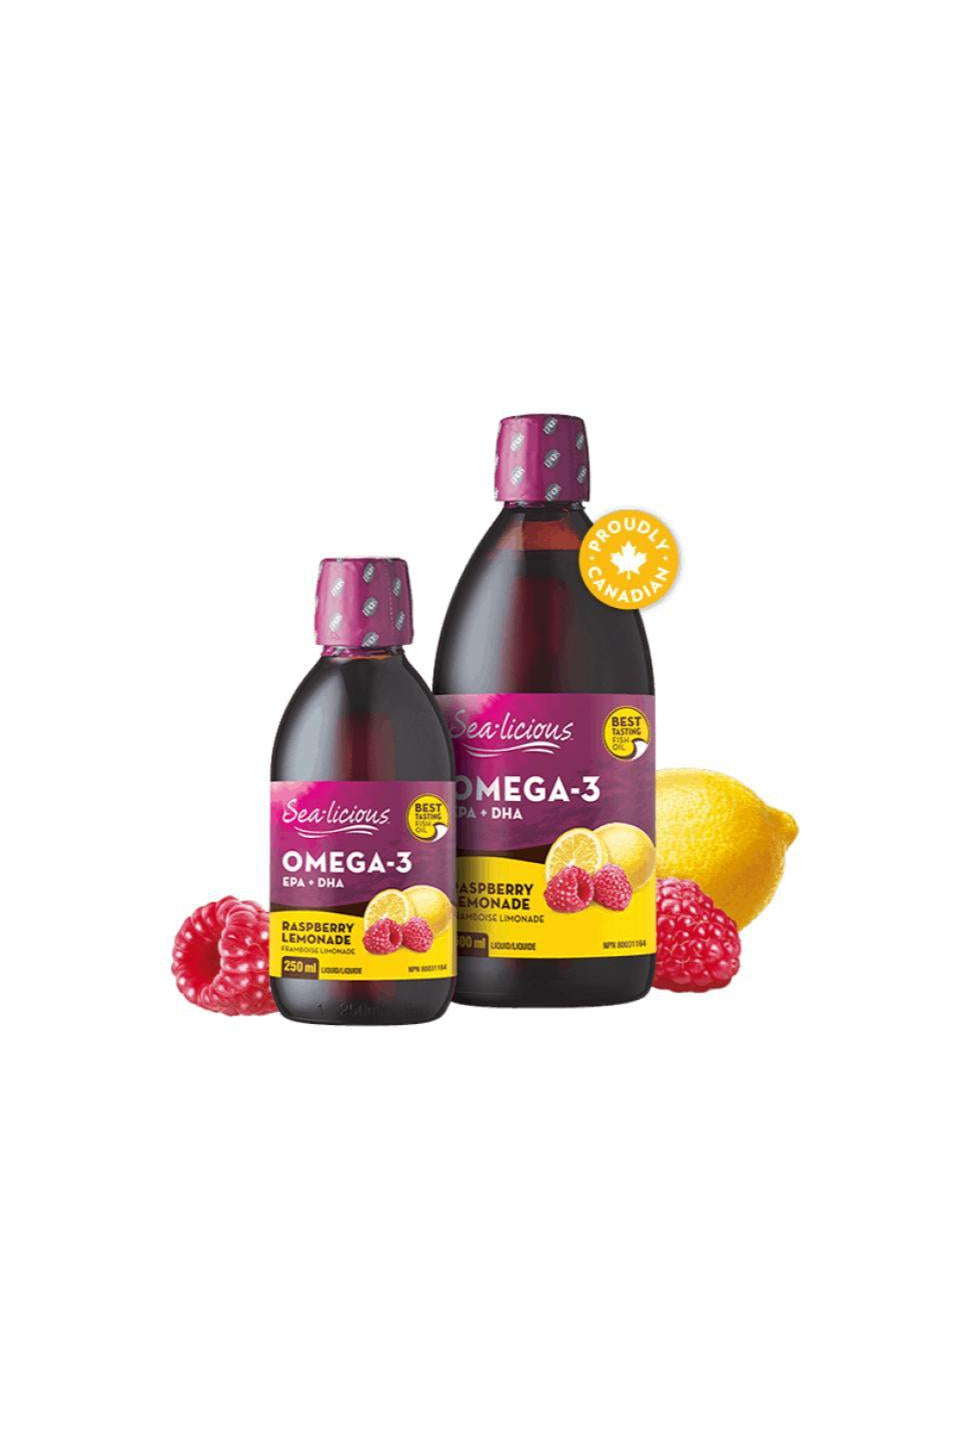 Sealicious Omega-3 EPA + DHA - Raspberry Lemonade 500ml